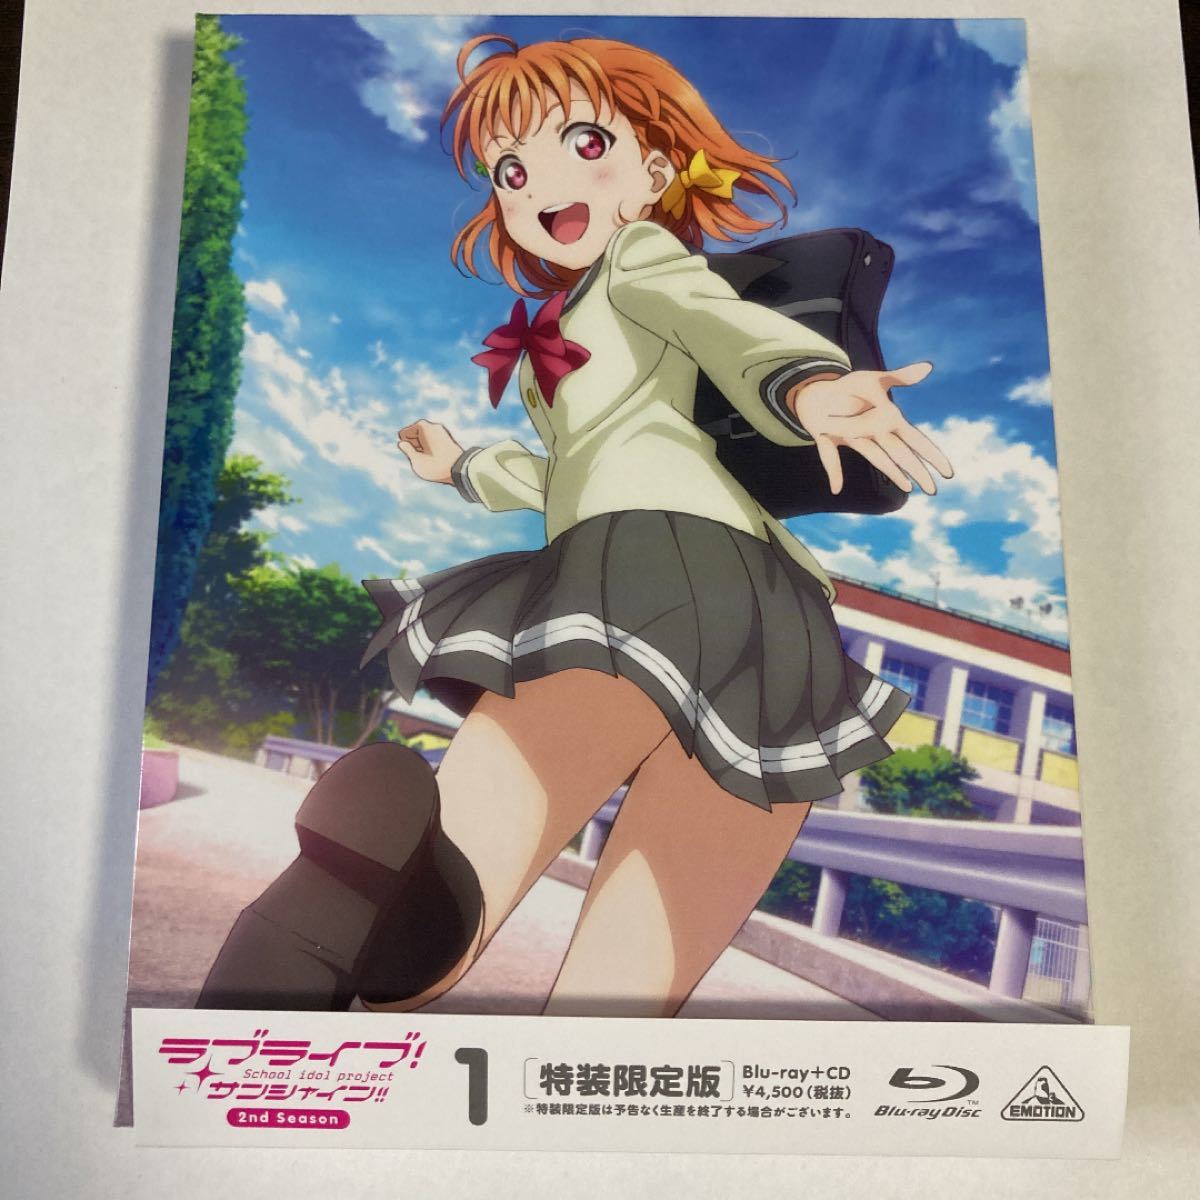 ラブライブ! サンシャイン!! 2nd Season Blu-ray 1 (特装限定版)